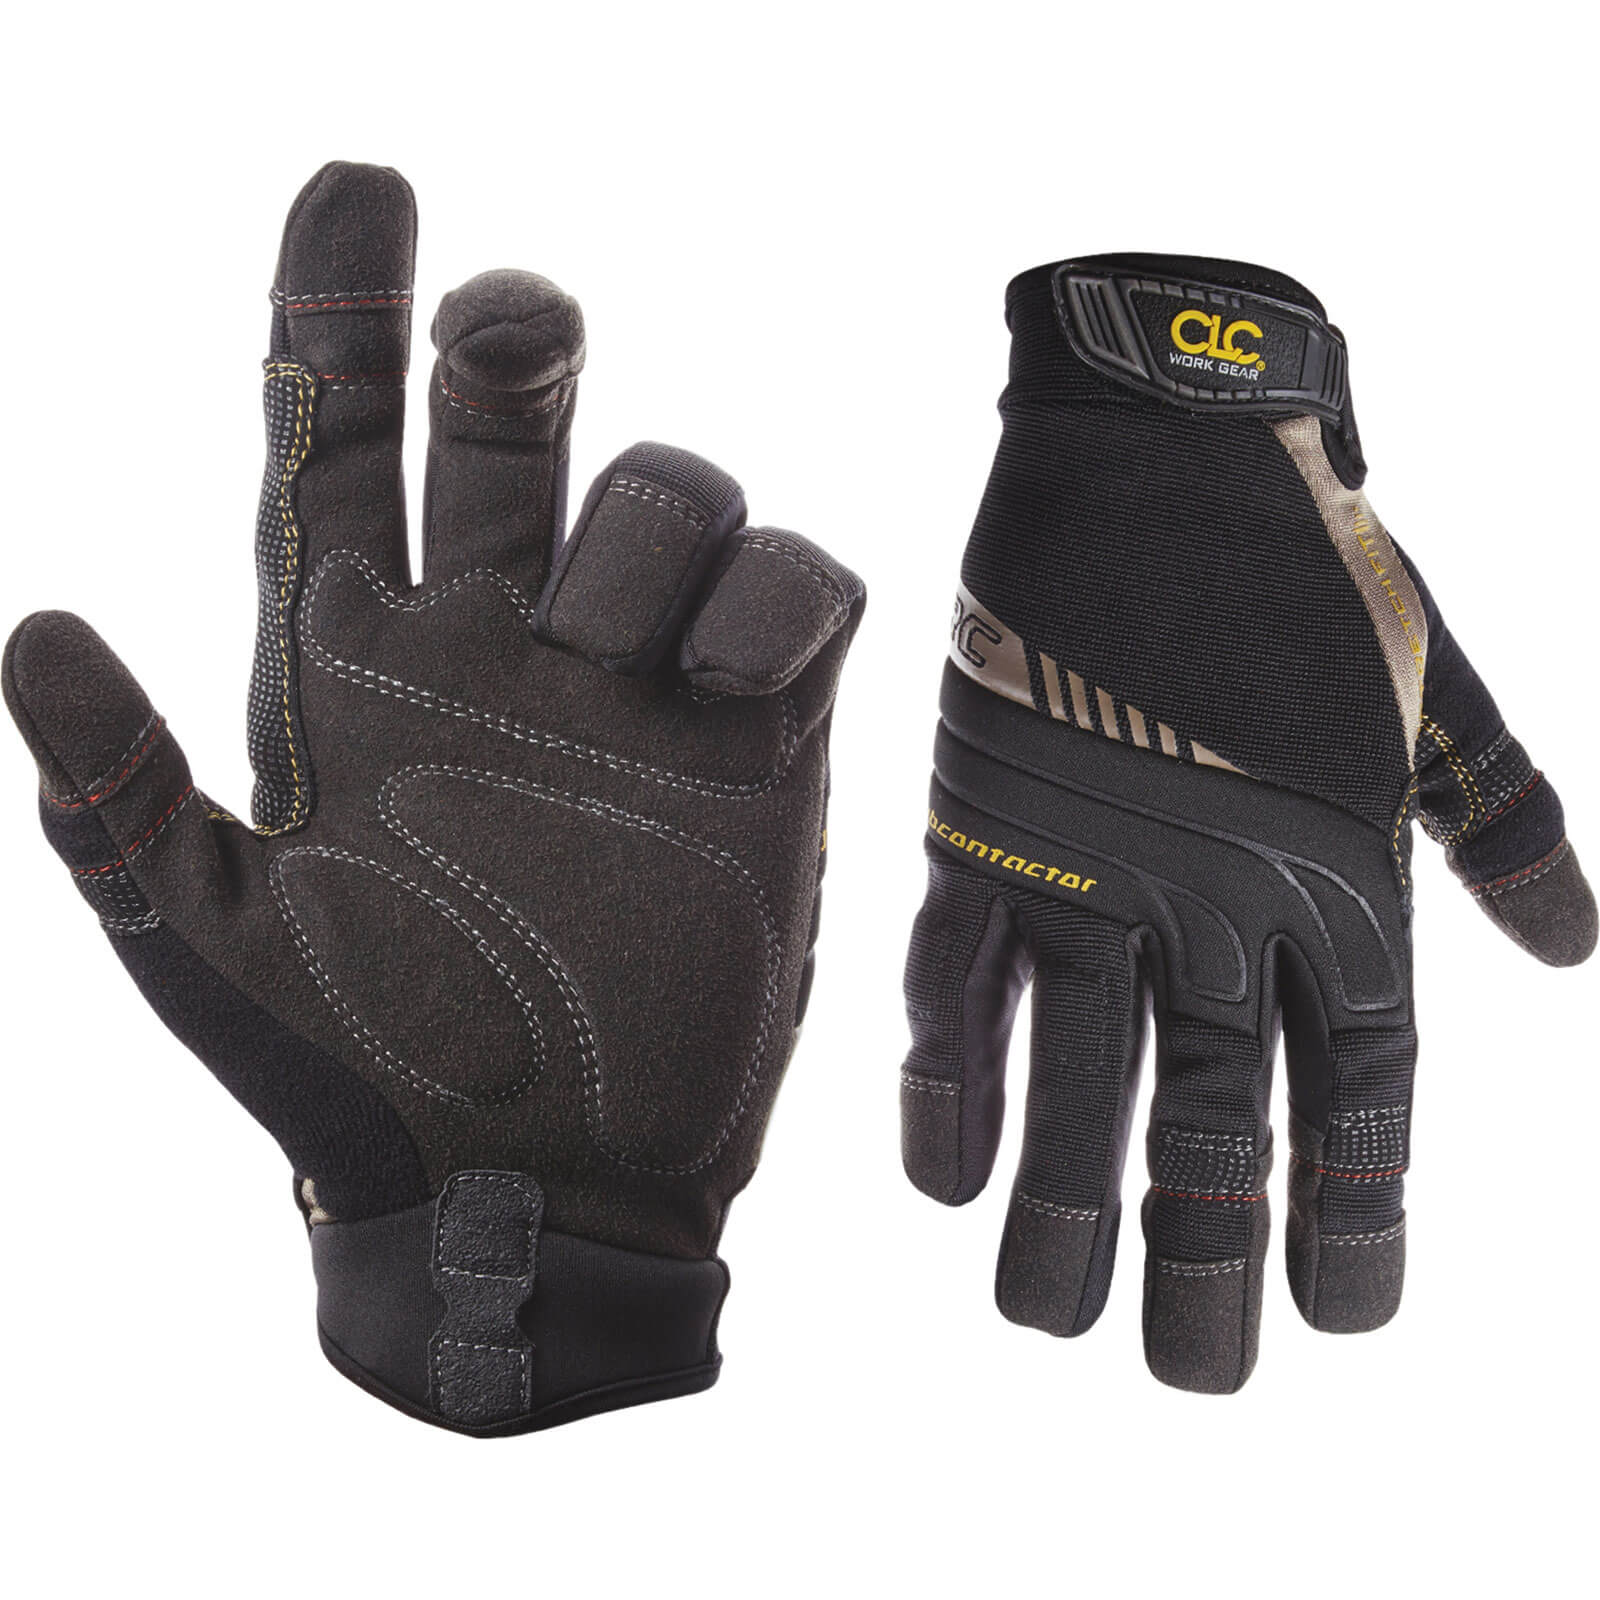 Kunys Flex Grip Contractor Gloves XL